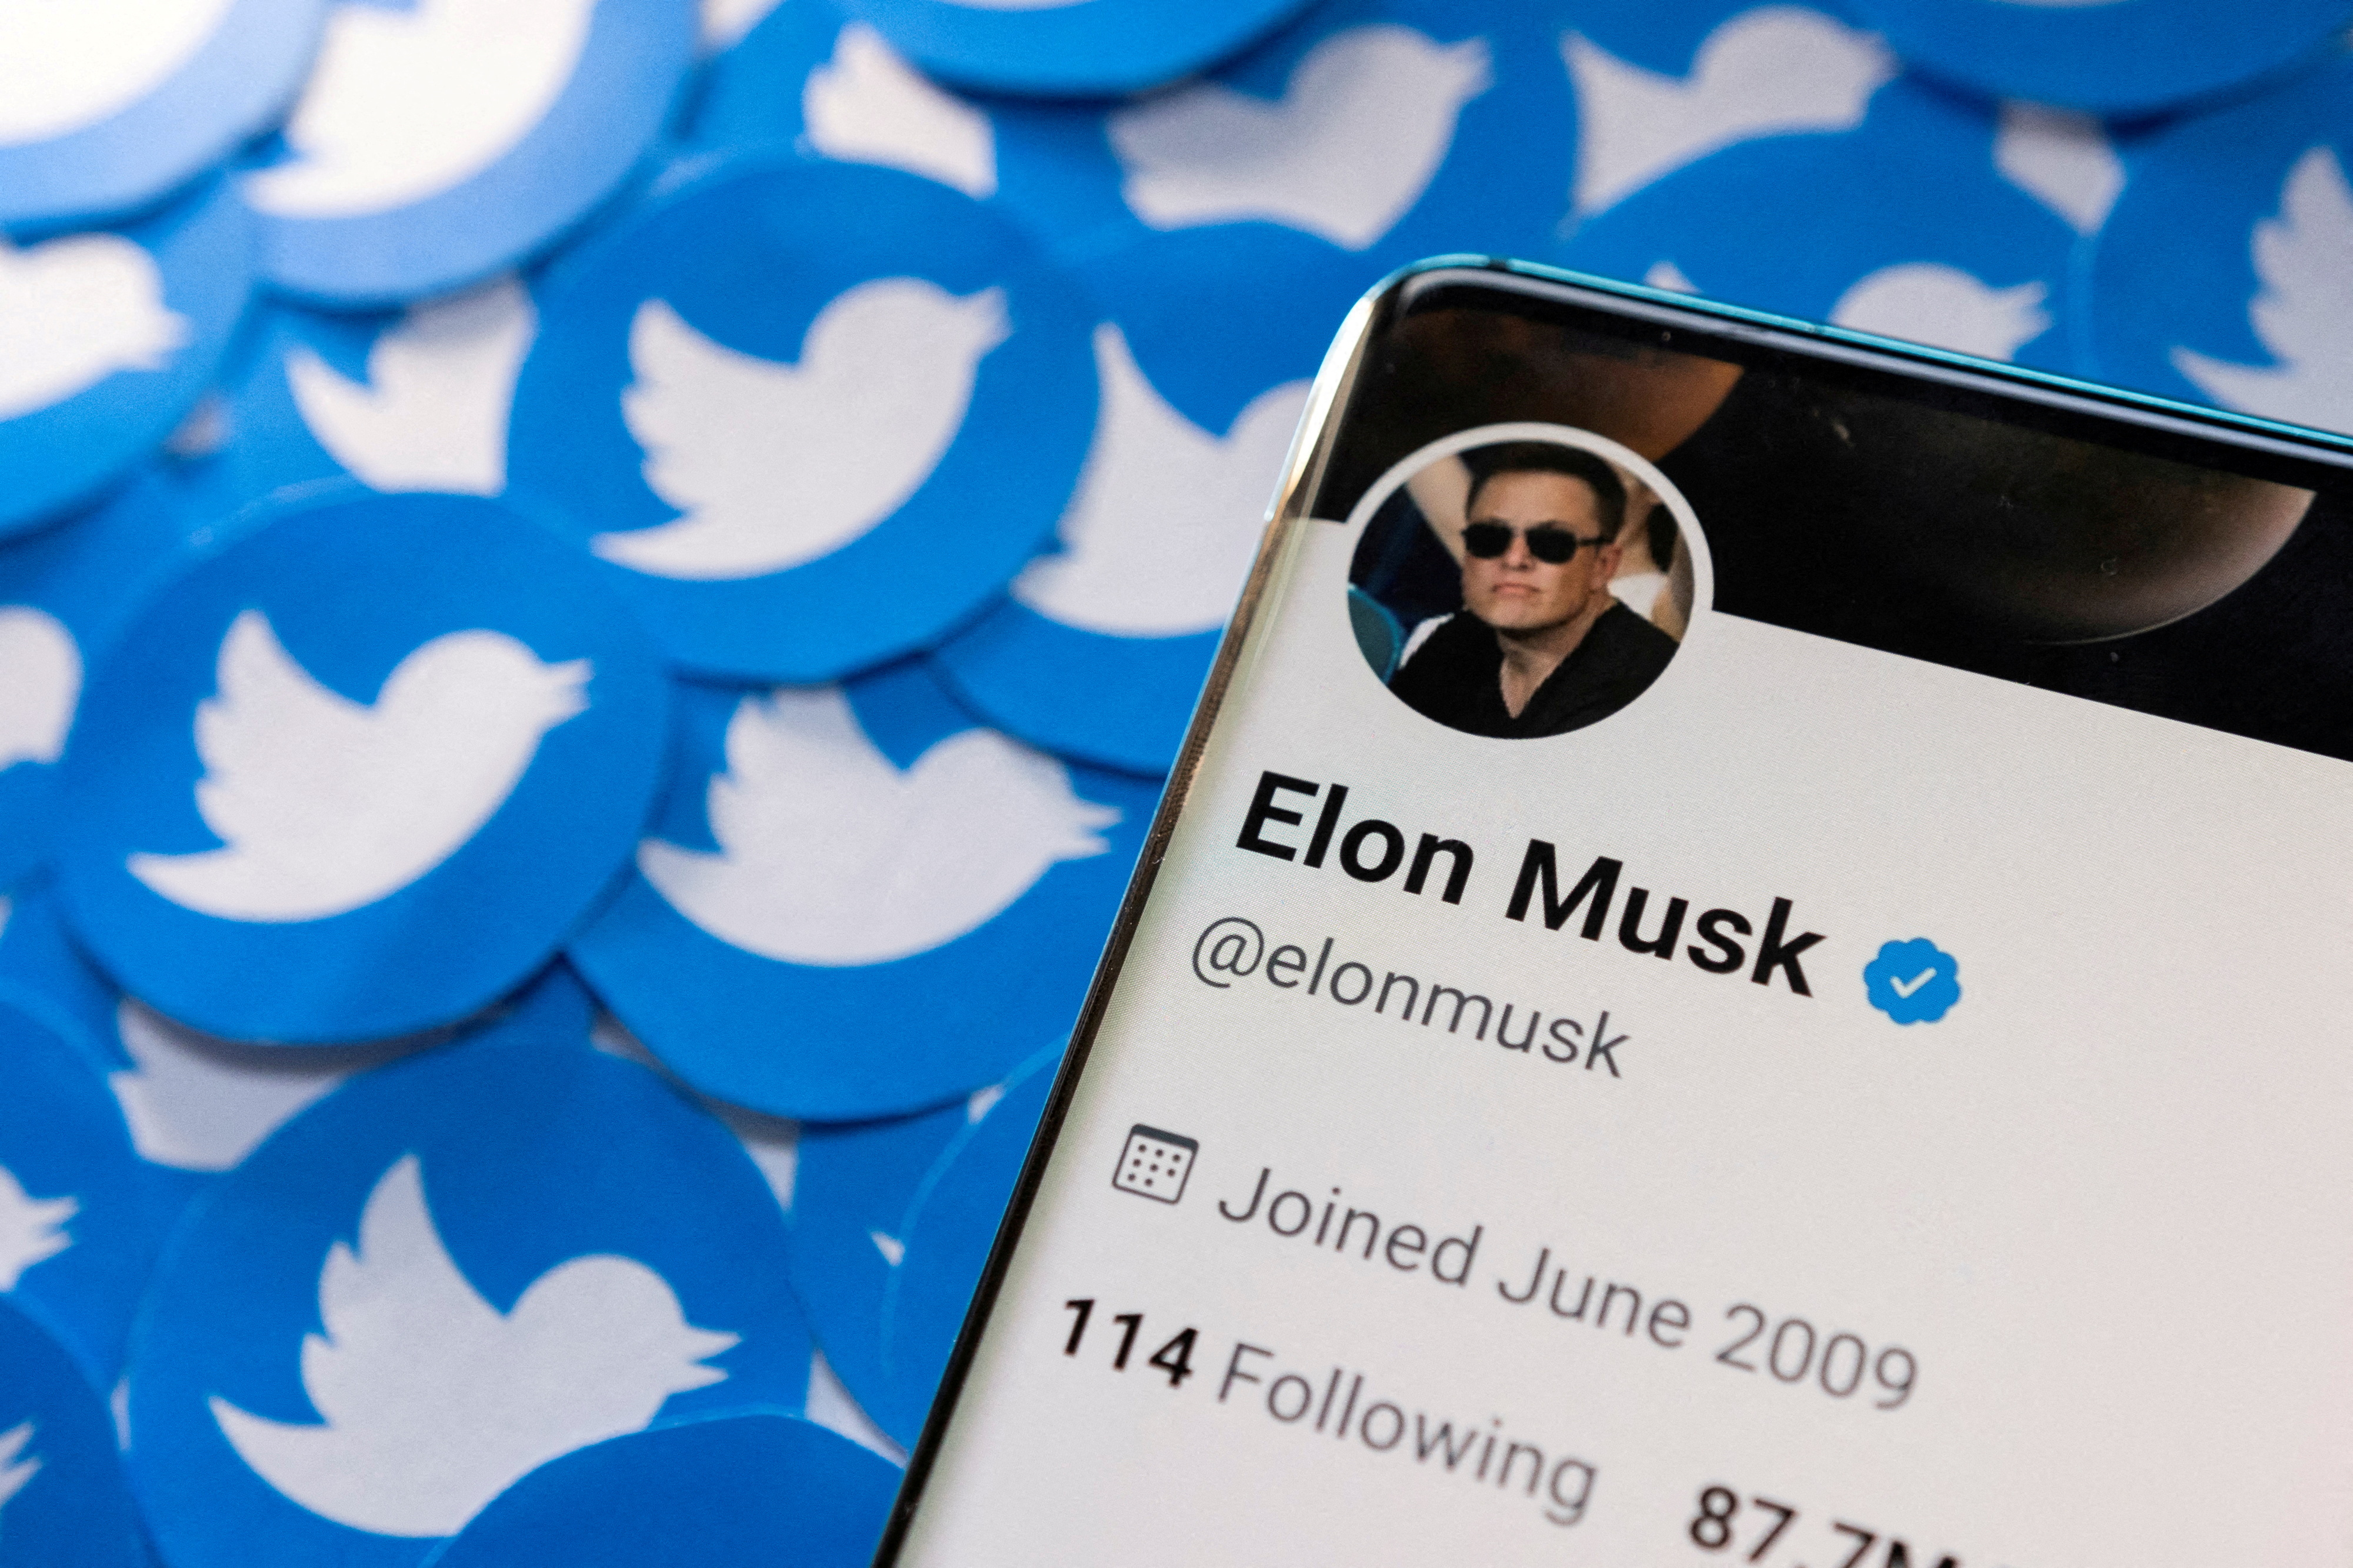 Elon Musk exigió que Twitter revele las cifras de cuentas fake o spam: “El acuerdo no puede seguir adelante hasta que lo haga”